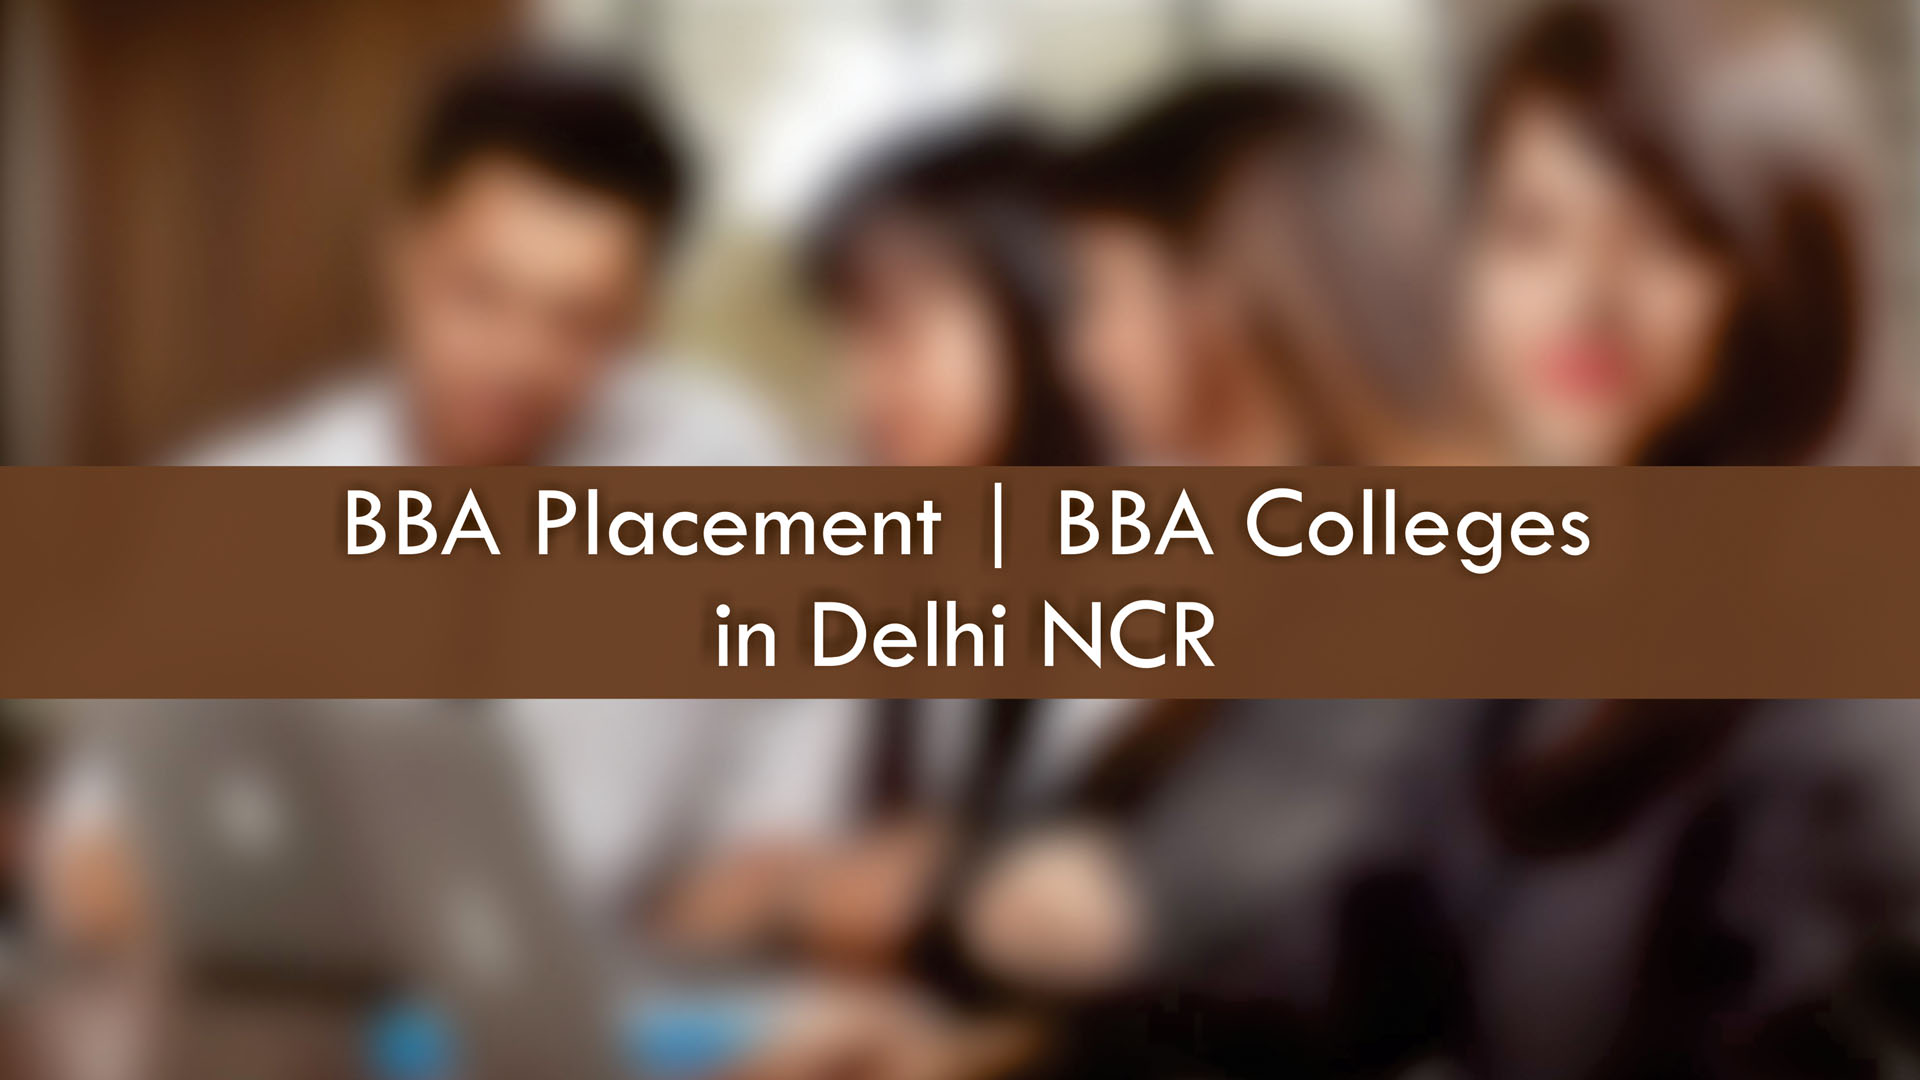 BBA college in Delhi